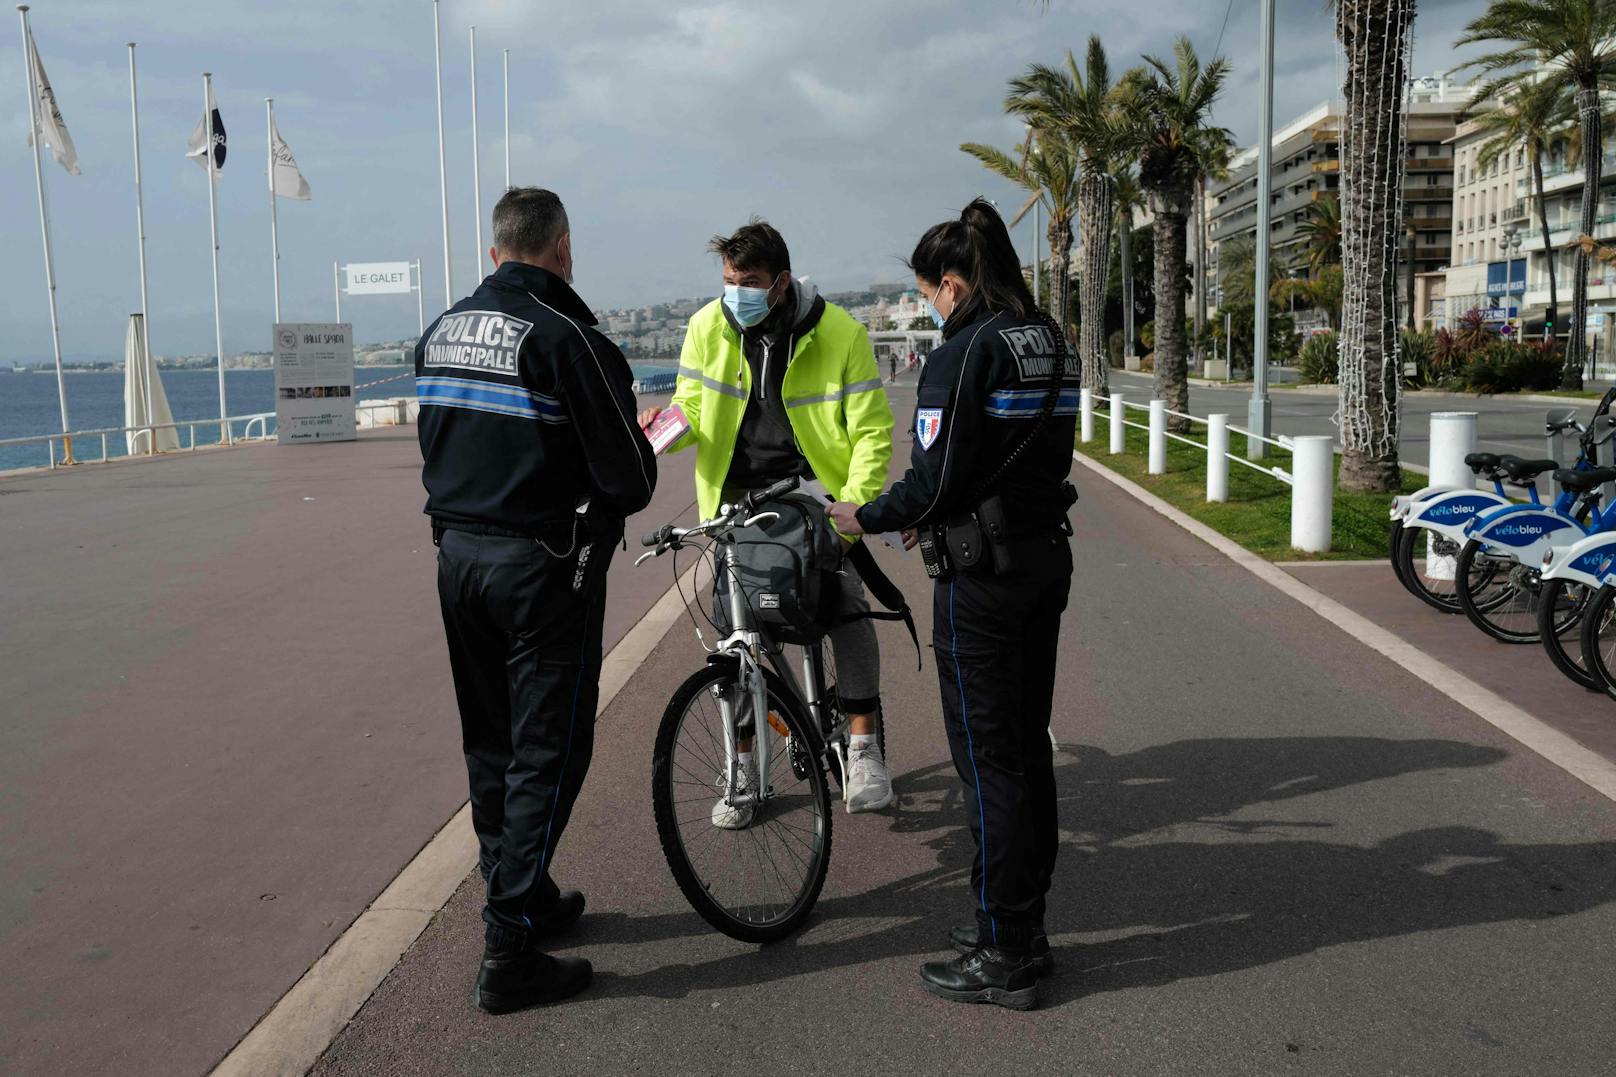 Polizeibeamte bei der Kontrolle eines Radfahrers in Nizza.